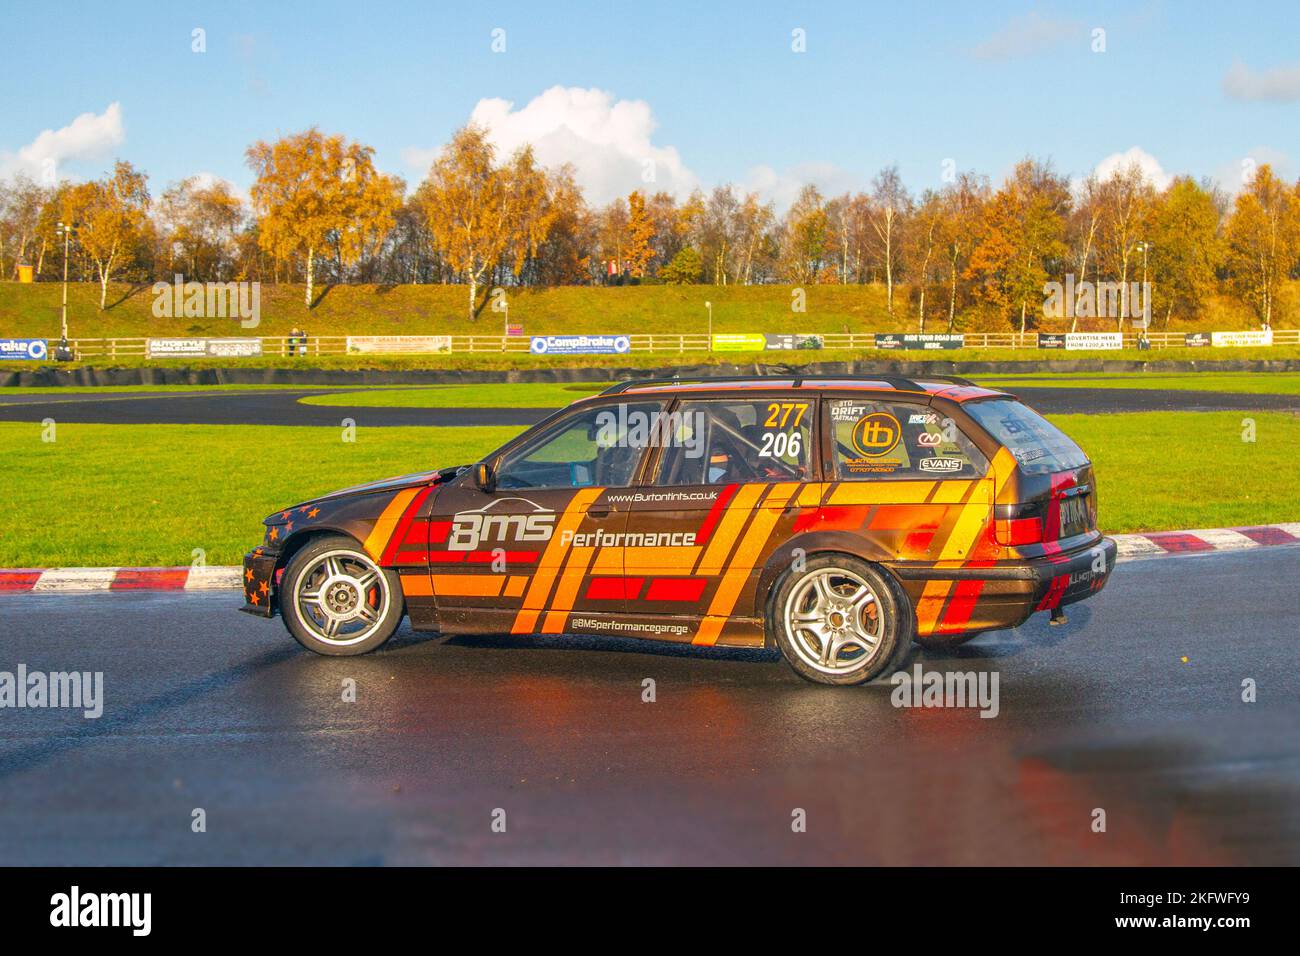 BMW E36 Kombi. BMS Performance, Burton Tins, 277 206; Hochgeschwindigkeitskurvenfahrten auf nassen Straßen am Three Sisters Drift Day in Wigan, Großbritannien Stockfoto